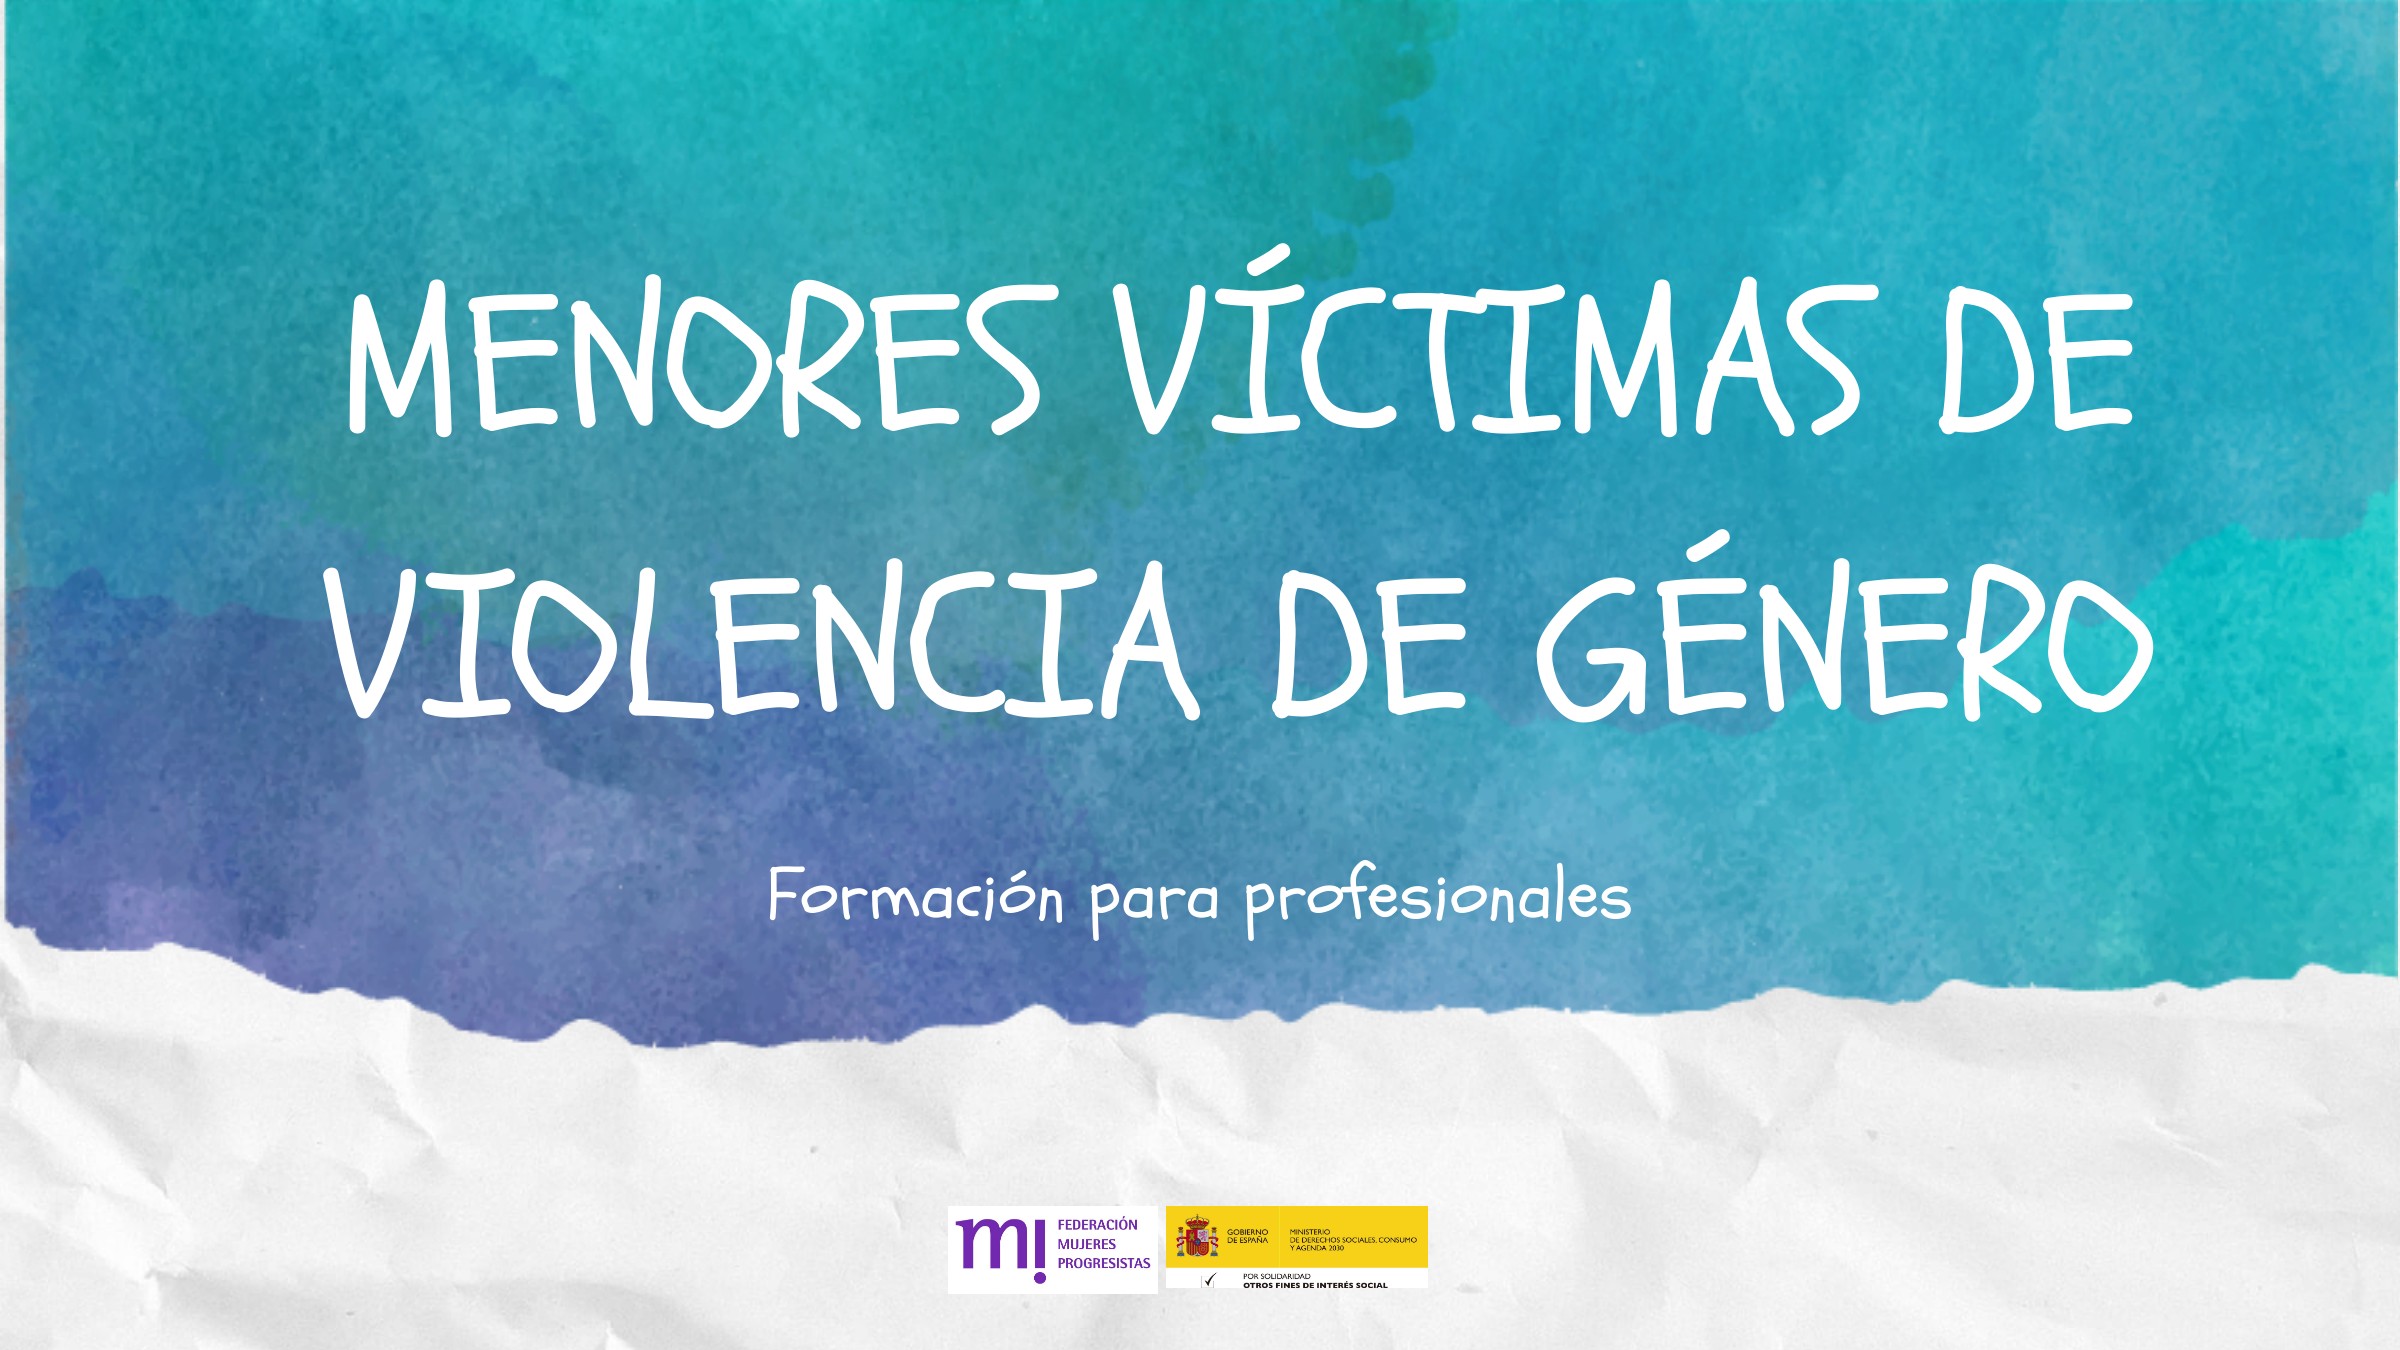 Course Image 10ª edición: Menores víctimas de violencia de género